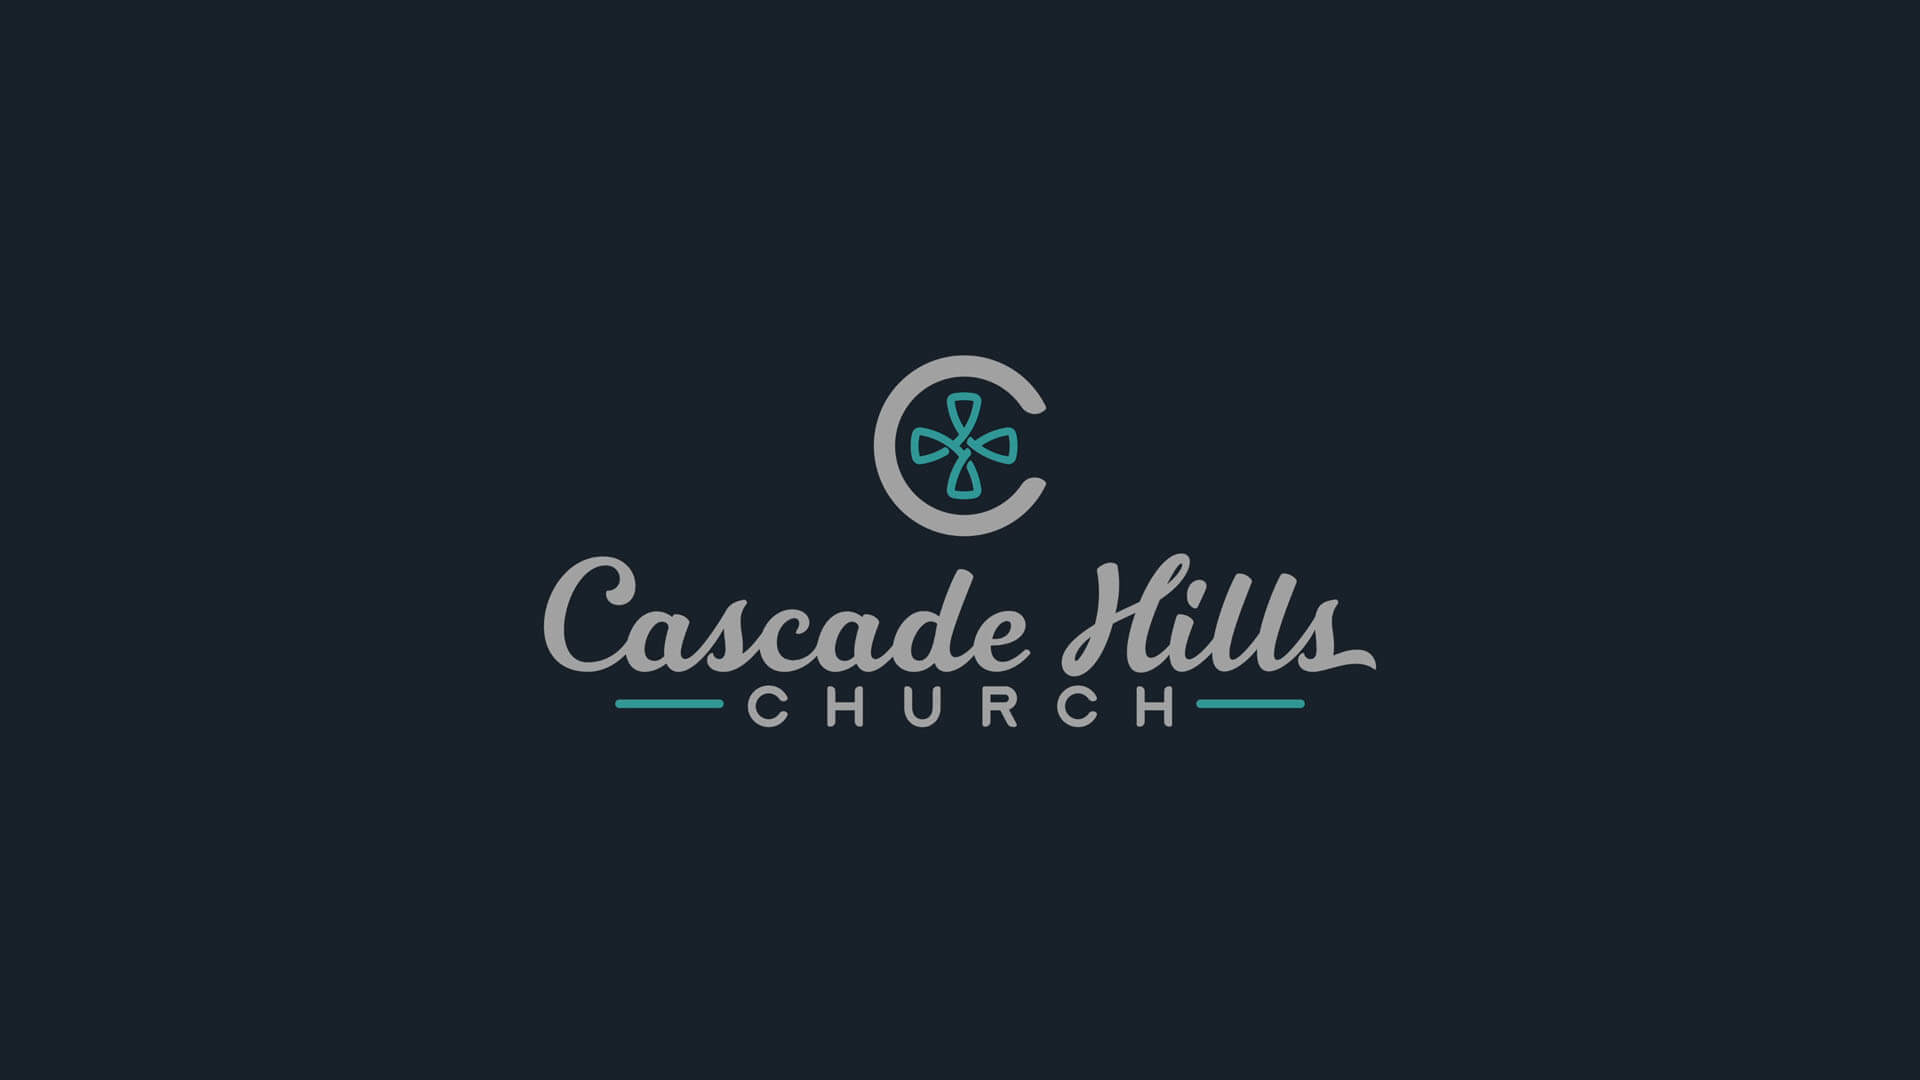 Cascade Hills Church